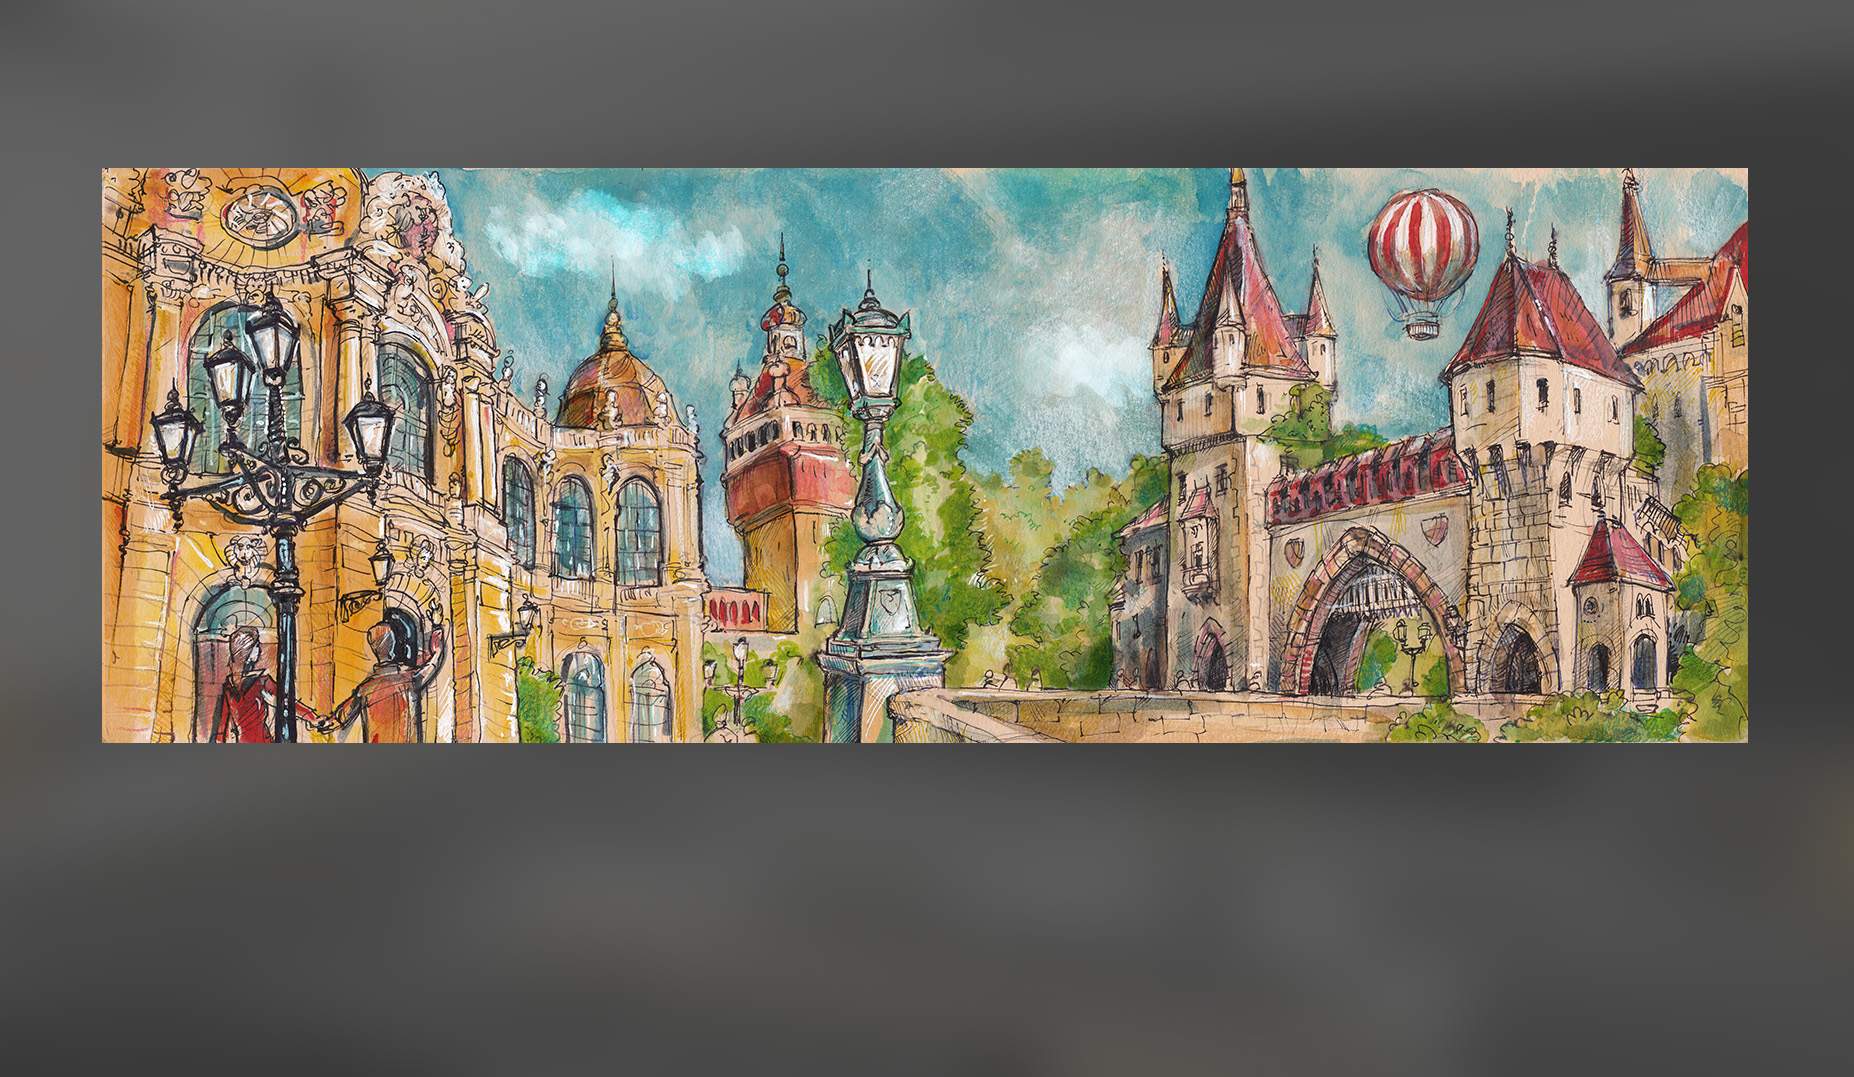 Varosliget panorama festmeny - muveszi nyomat - Budapest Collection